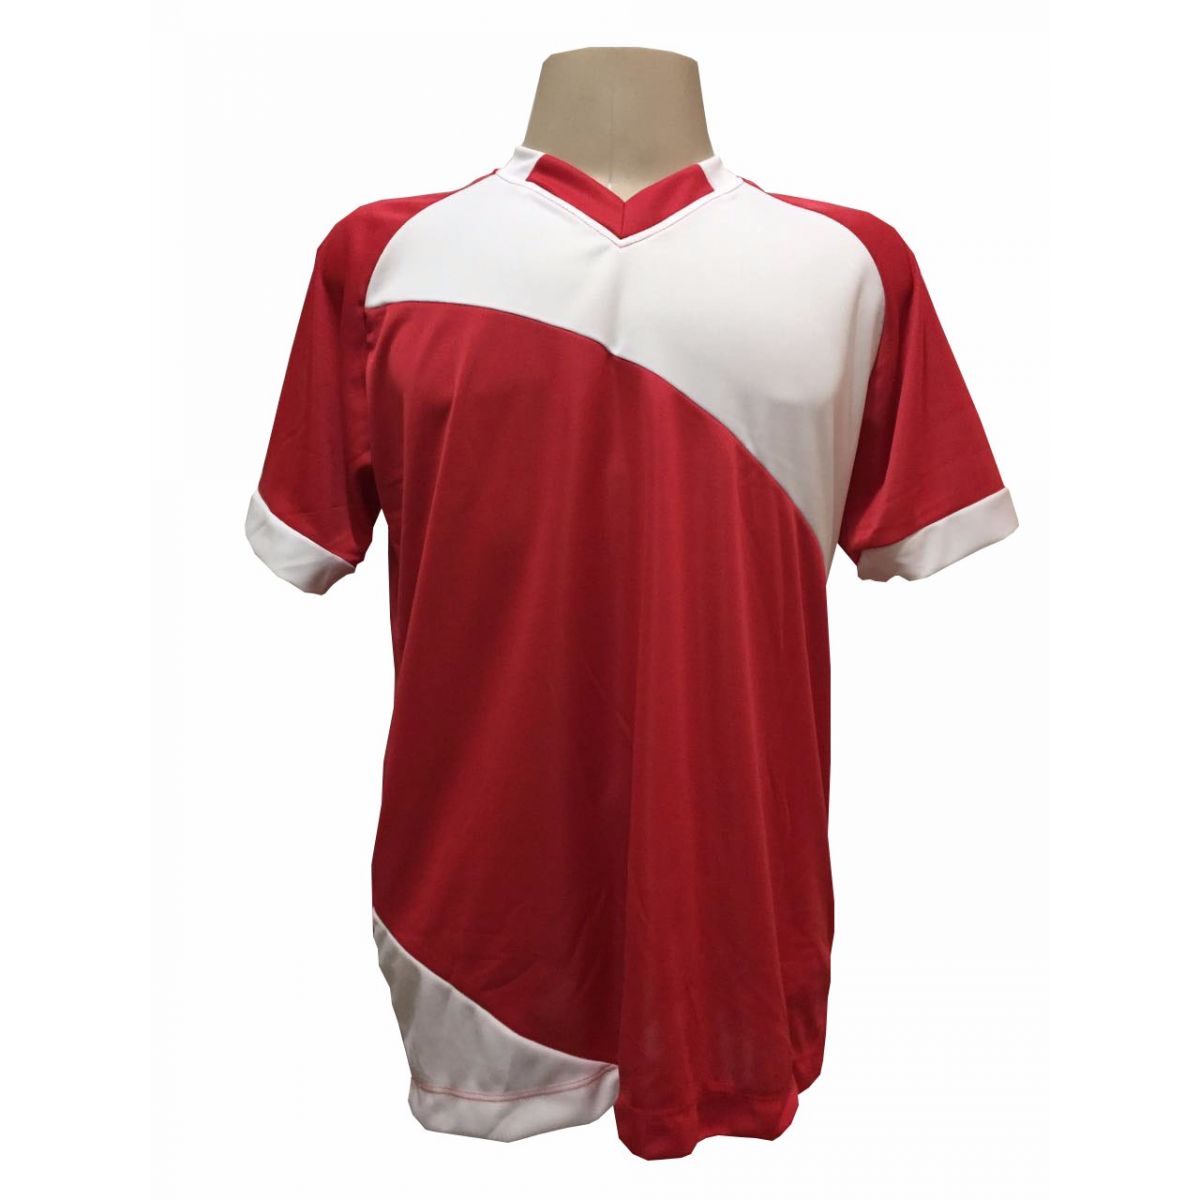 Uniforme Esportivo com 20 camisas modelo Bélgica Vermelho/Branco + 20 calções modelo Madrid + 1 Goleiro + Brindes